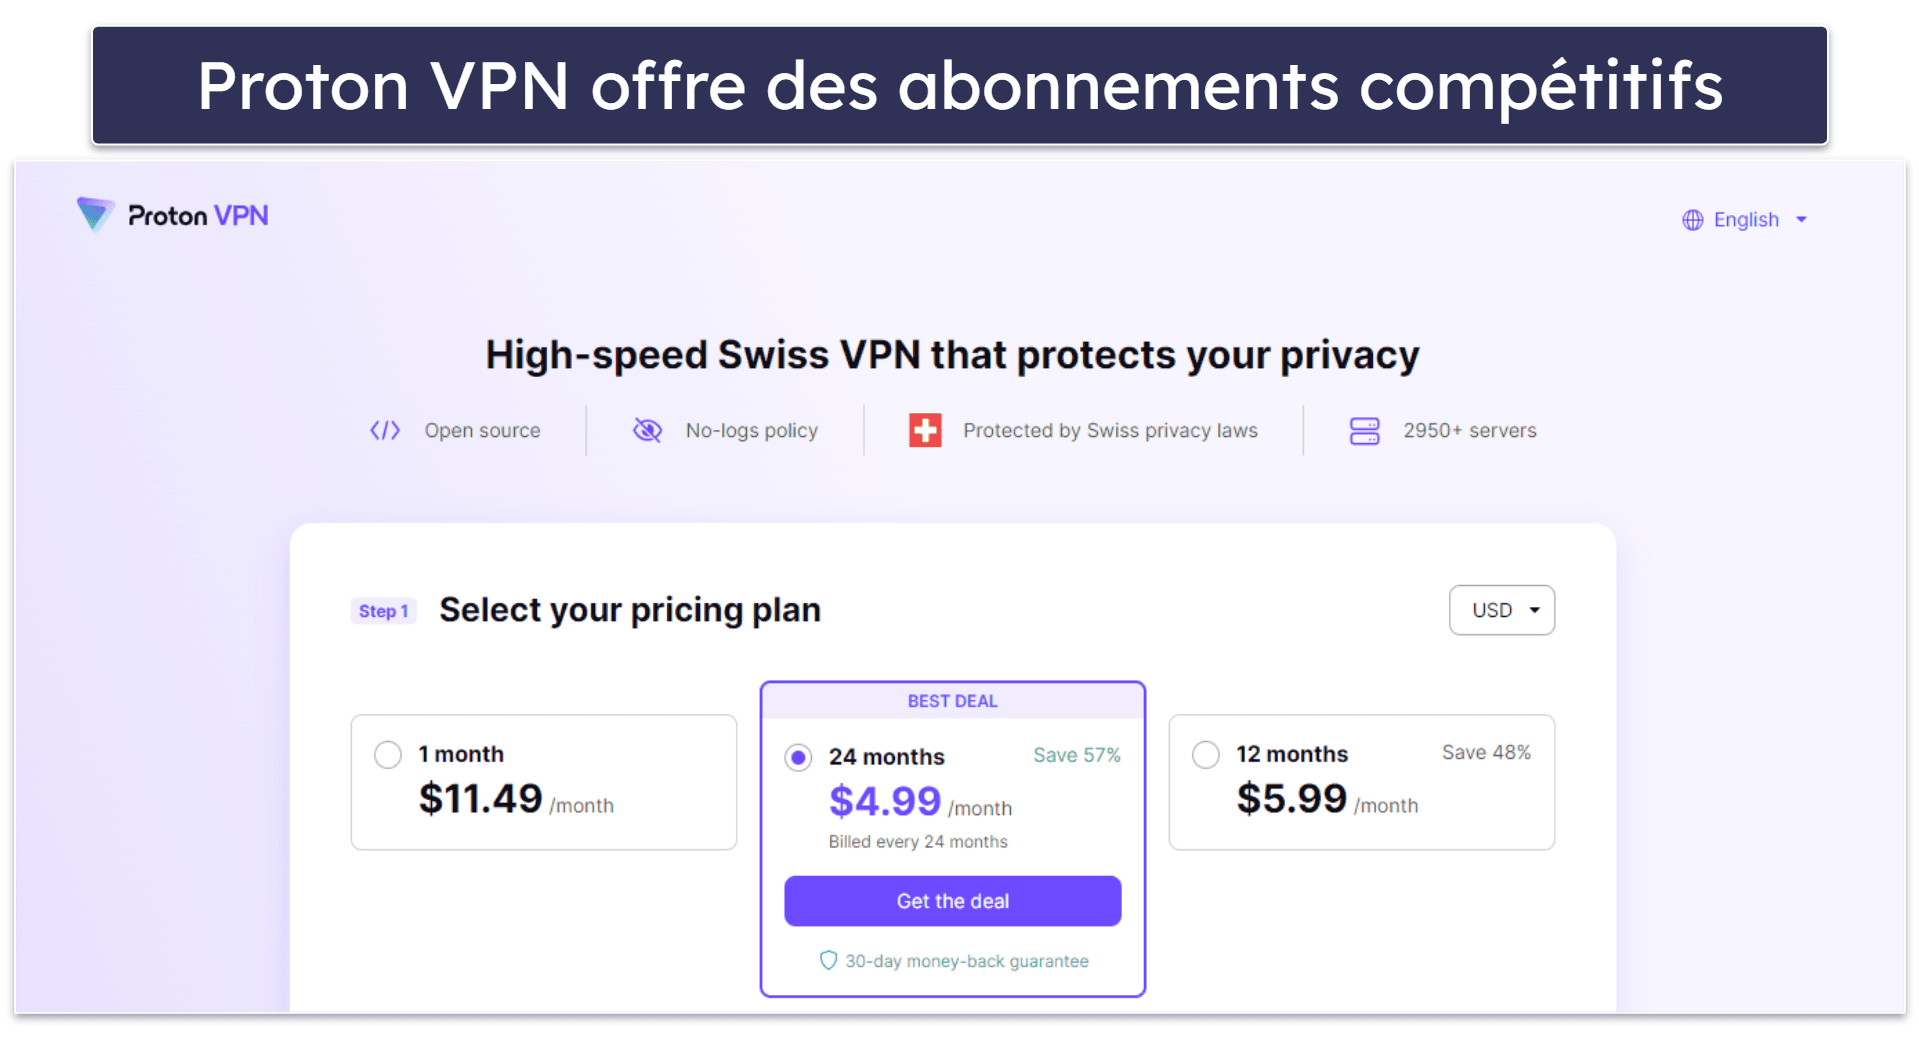 7. Proton VPN: fonctionnalités de sécurité et de confidentialité de haute qualité